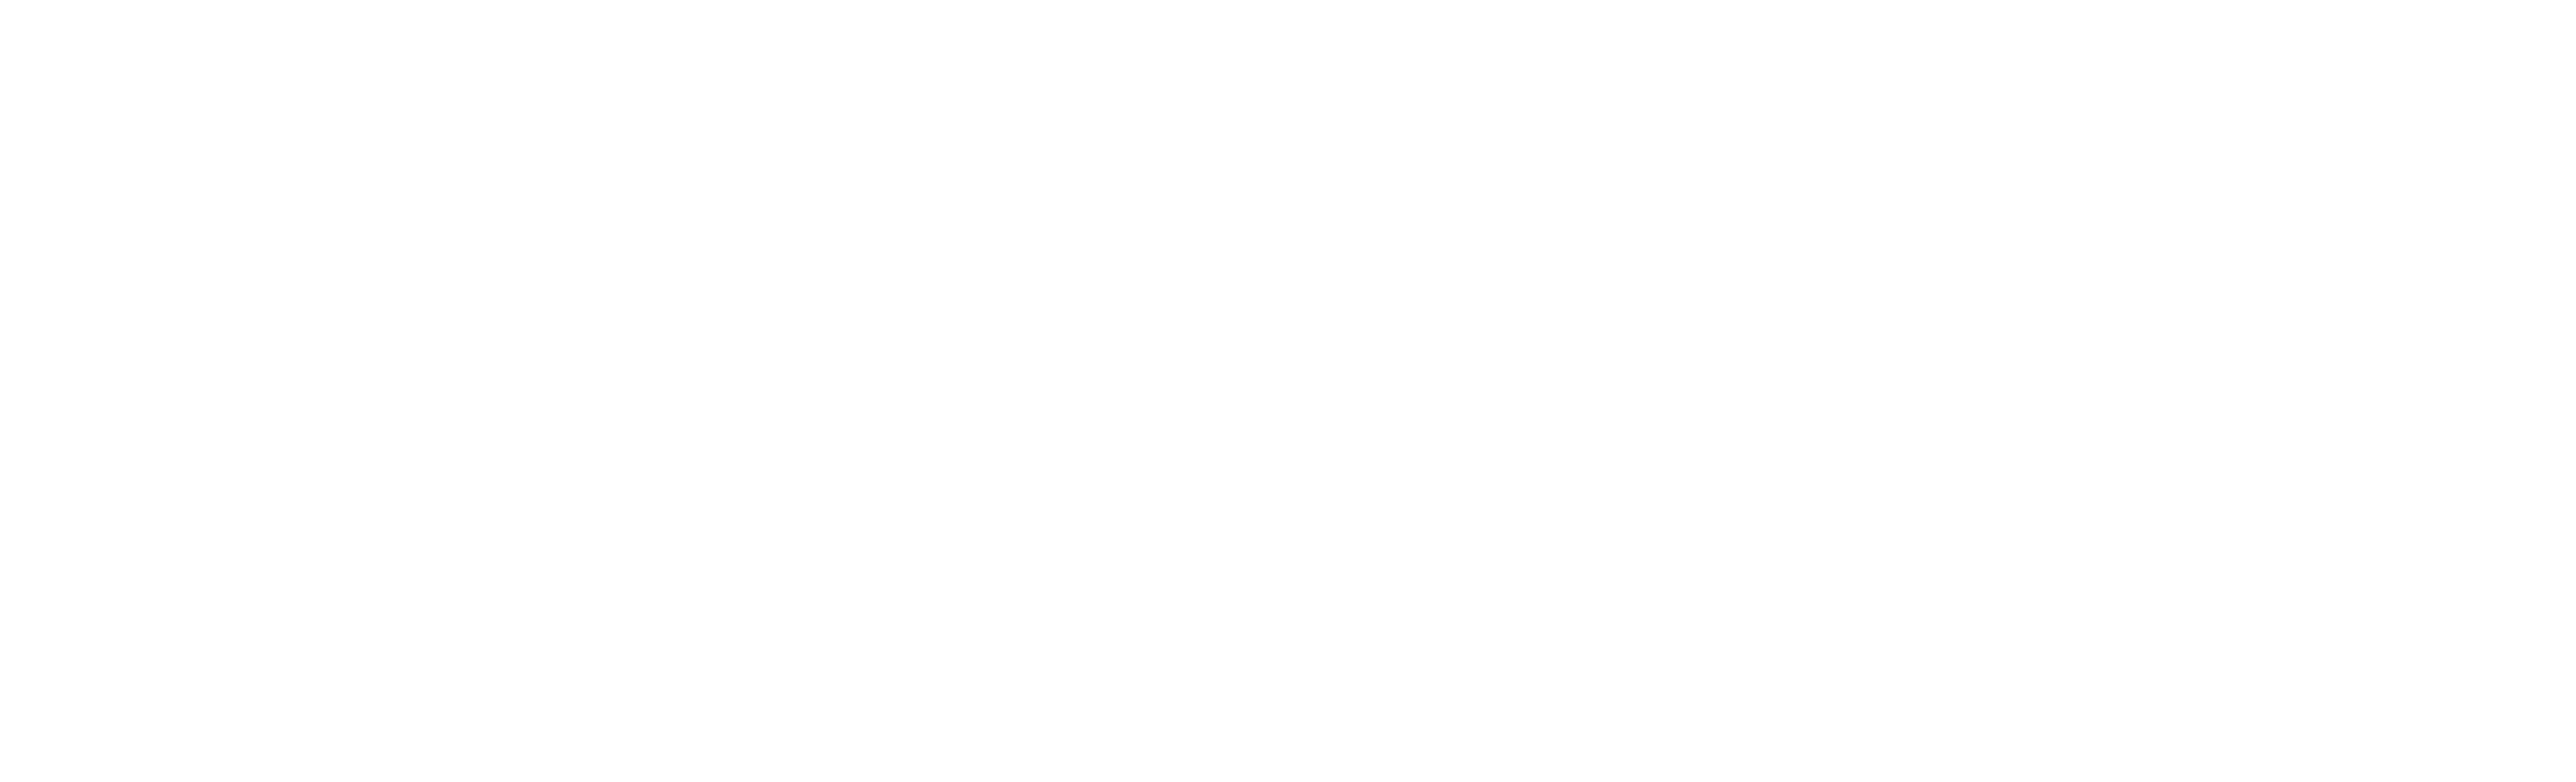 Gucci logo PNG картина